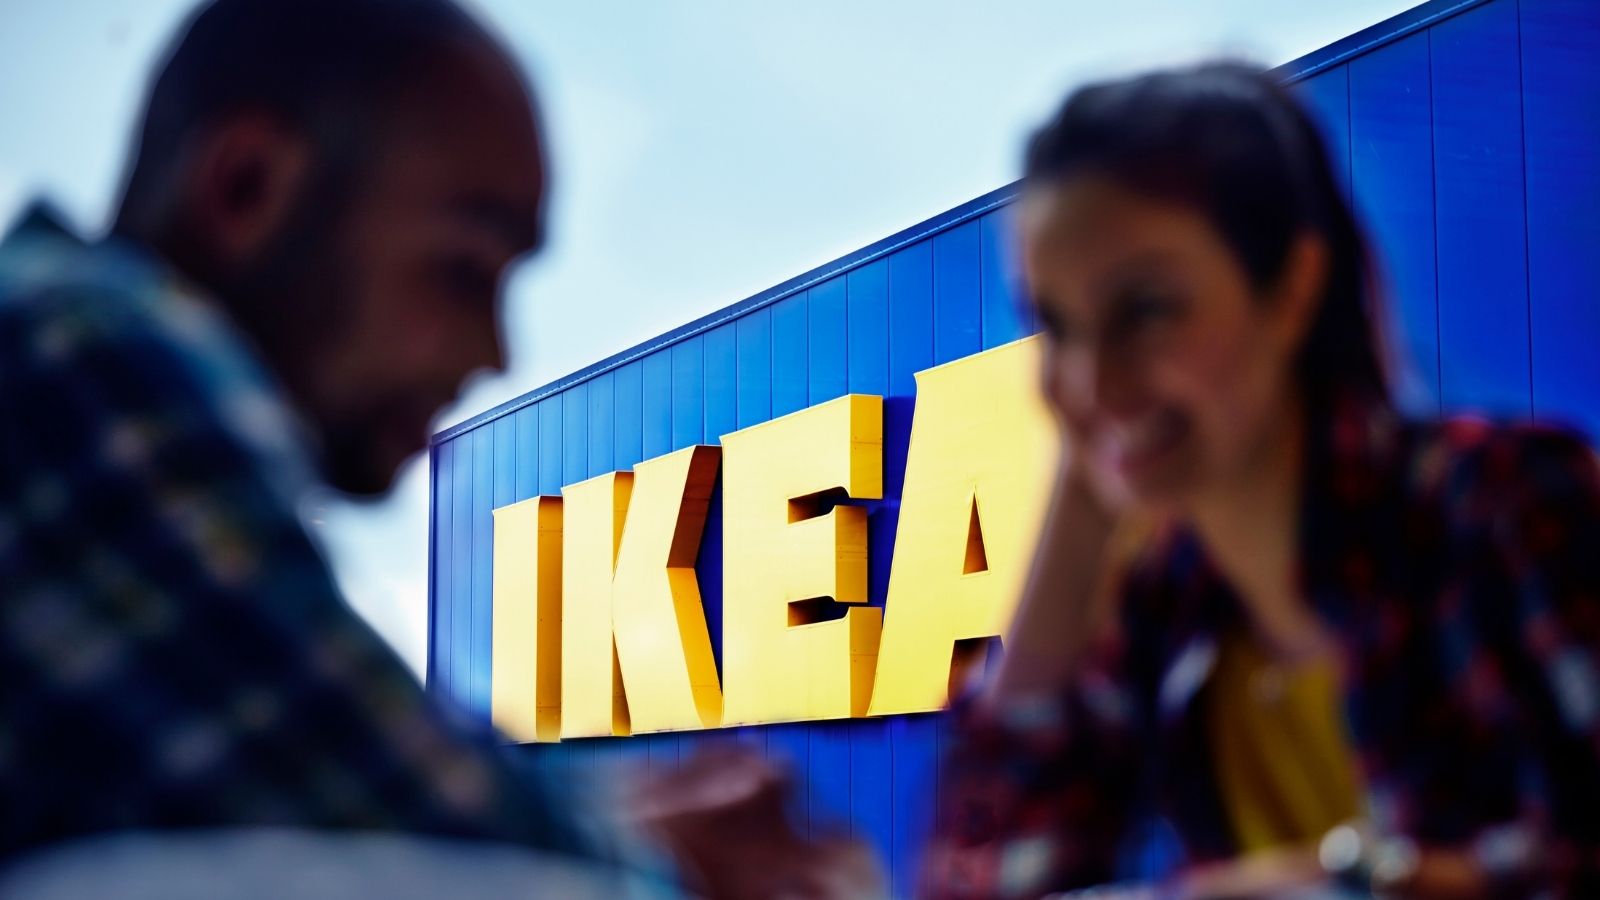 IKEA rozstrzygnęła przetarg! Public Relations mediarun ikea przetarg